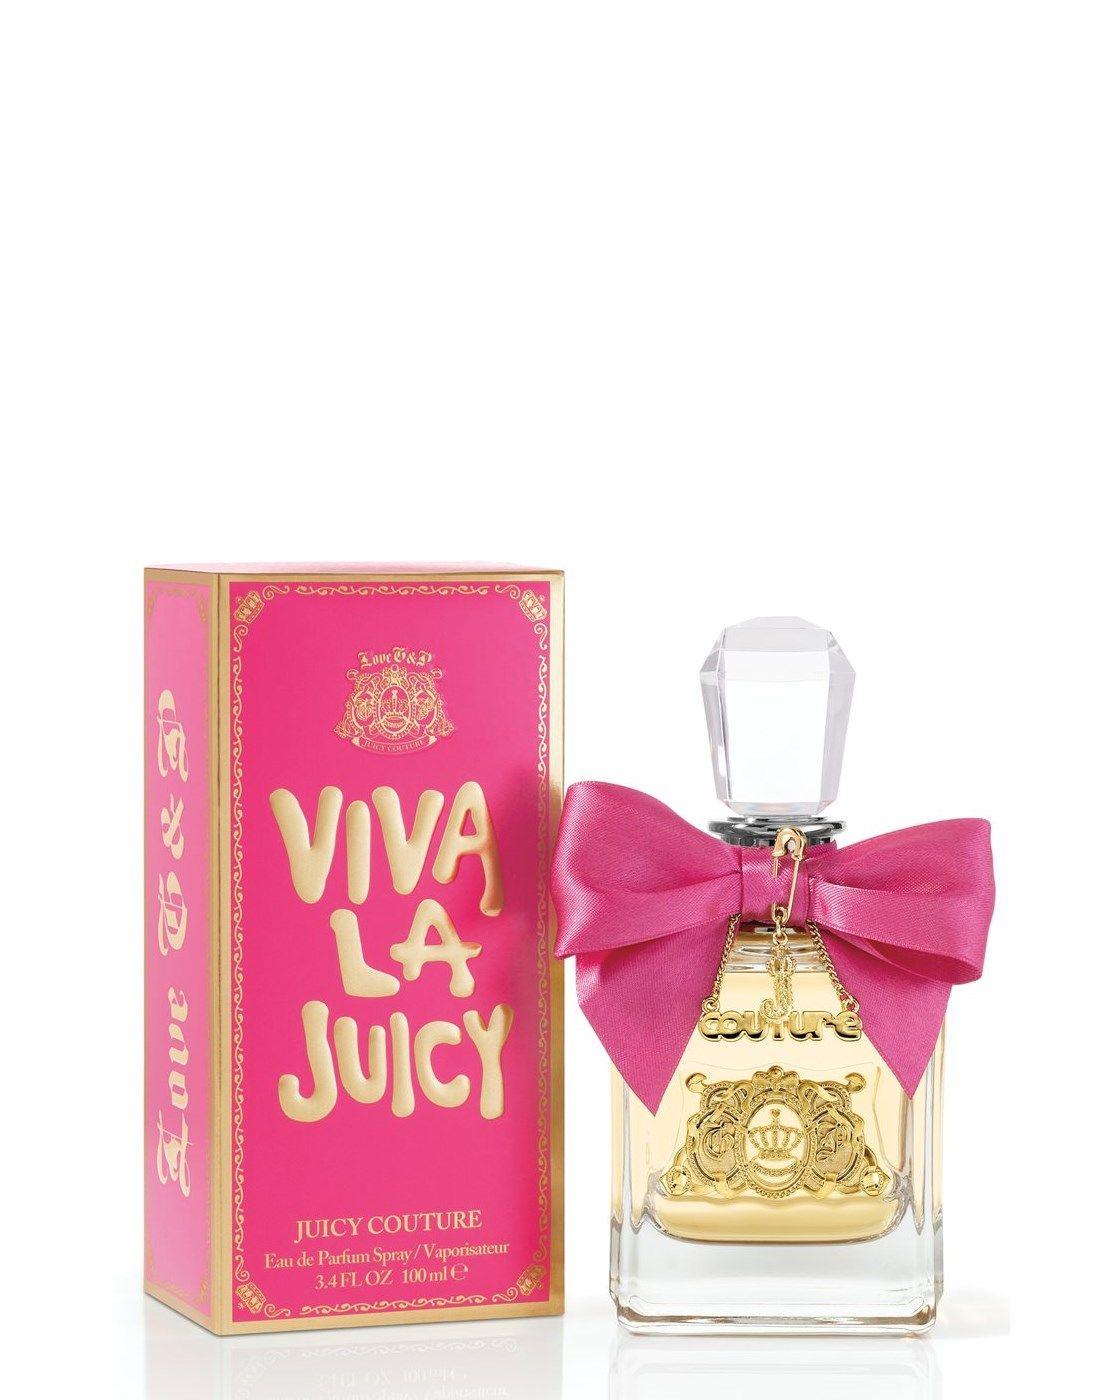 Juicy Couture Perfume Logo - Viva La Juicy 3.4 Oz Eau De Parfum